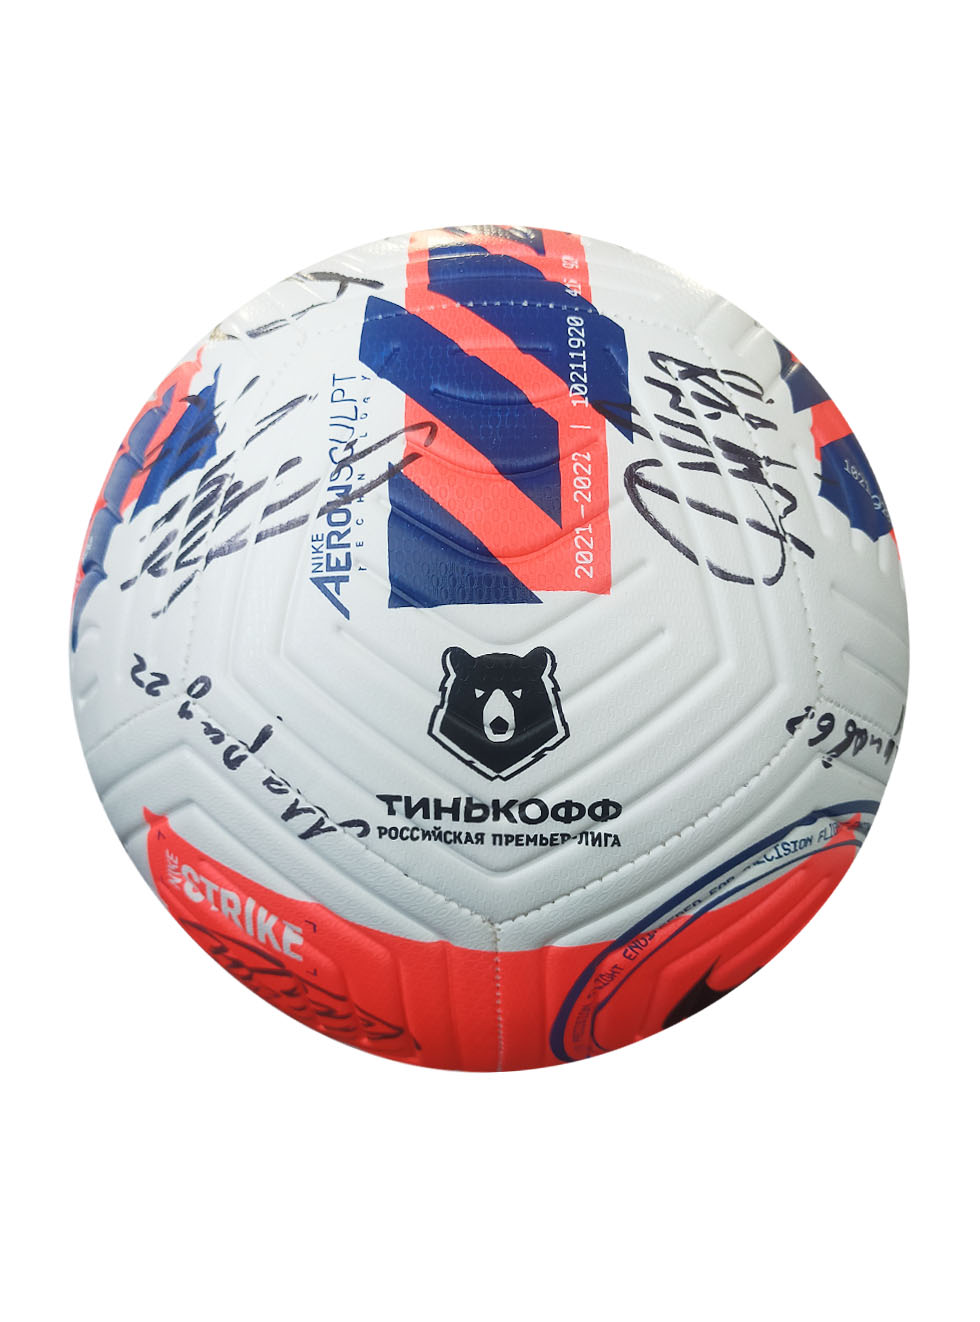 фото Мяч футбольный nike rpl aerowsculpt (fa21) с эмблемой пфк цска с автографами, размер 5